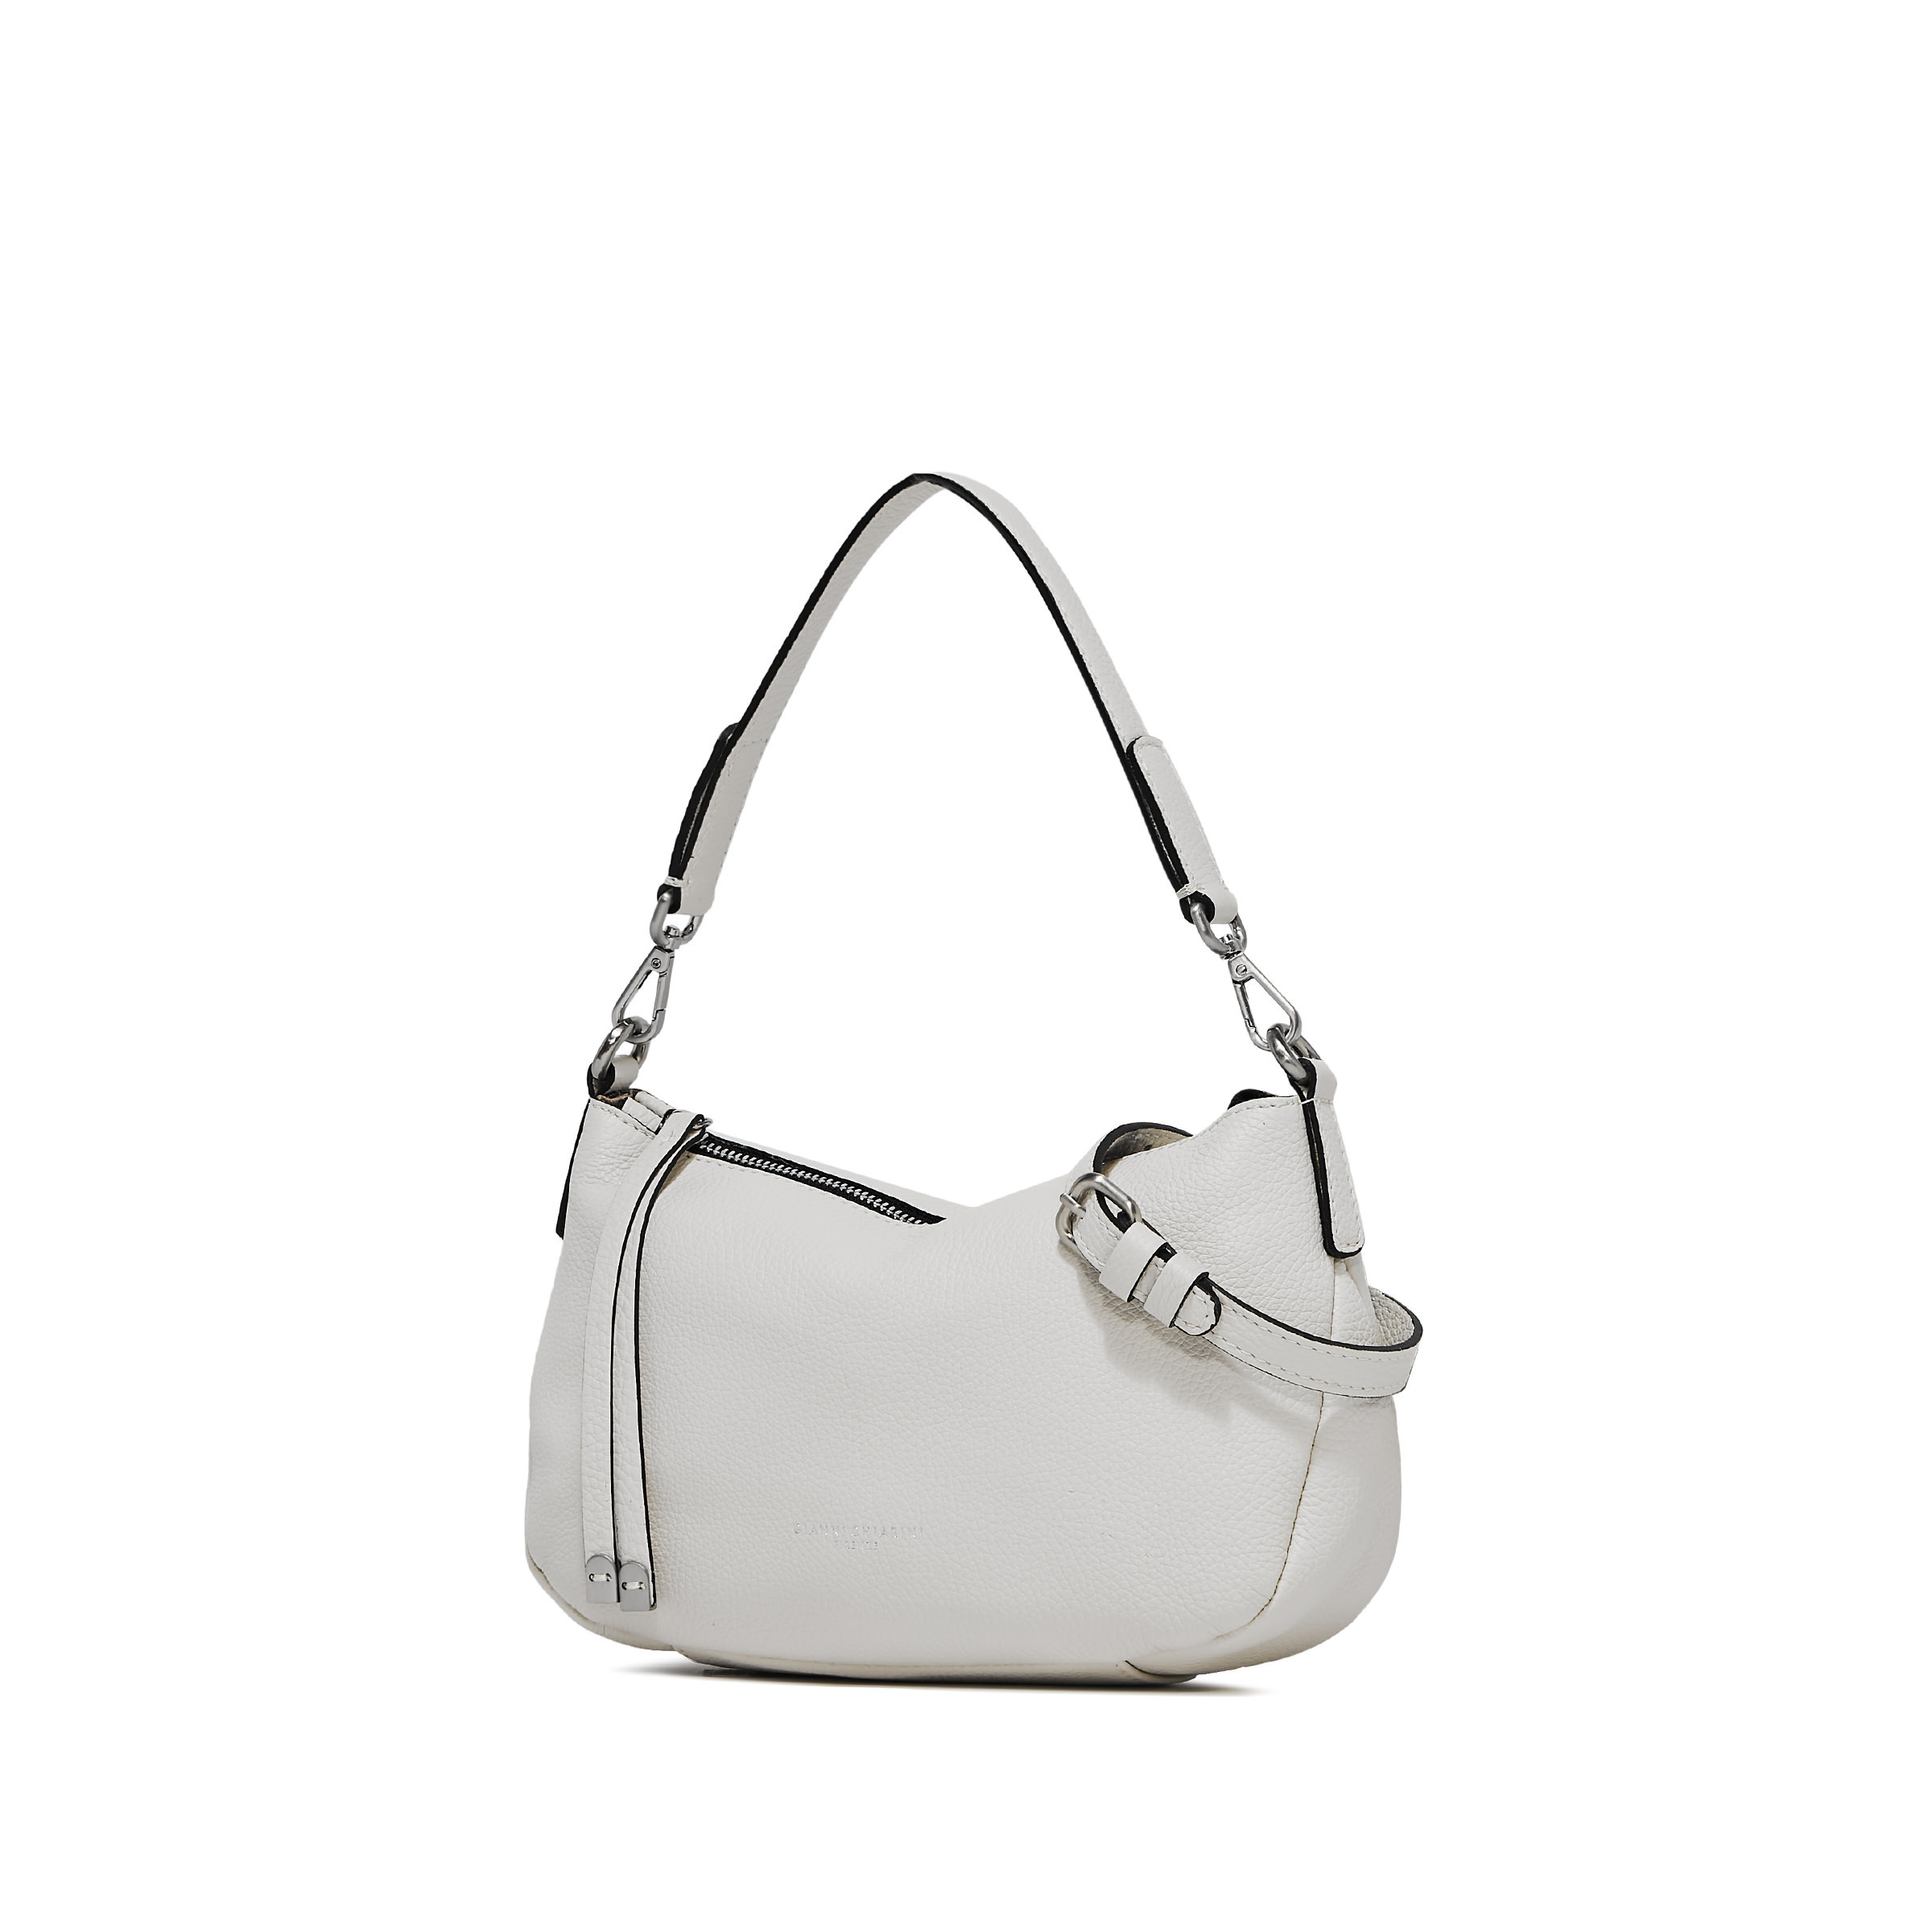 Gianni Chiarini - Nadia Leather bag, White, large image number 2